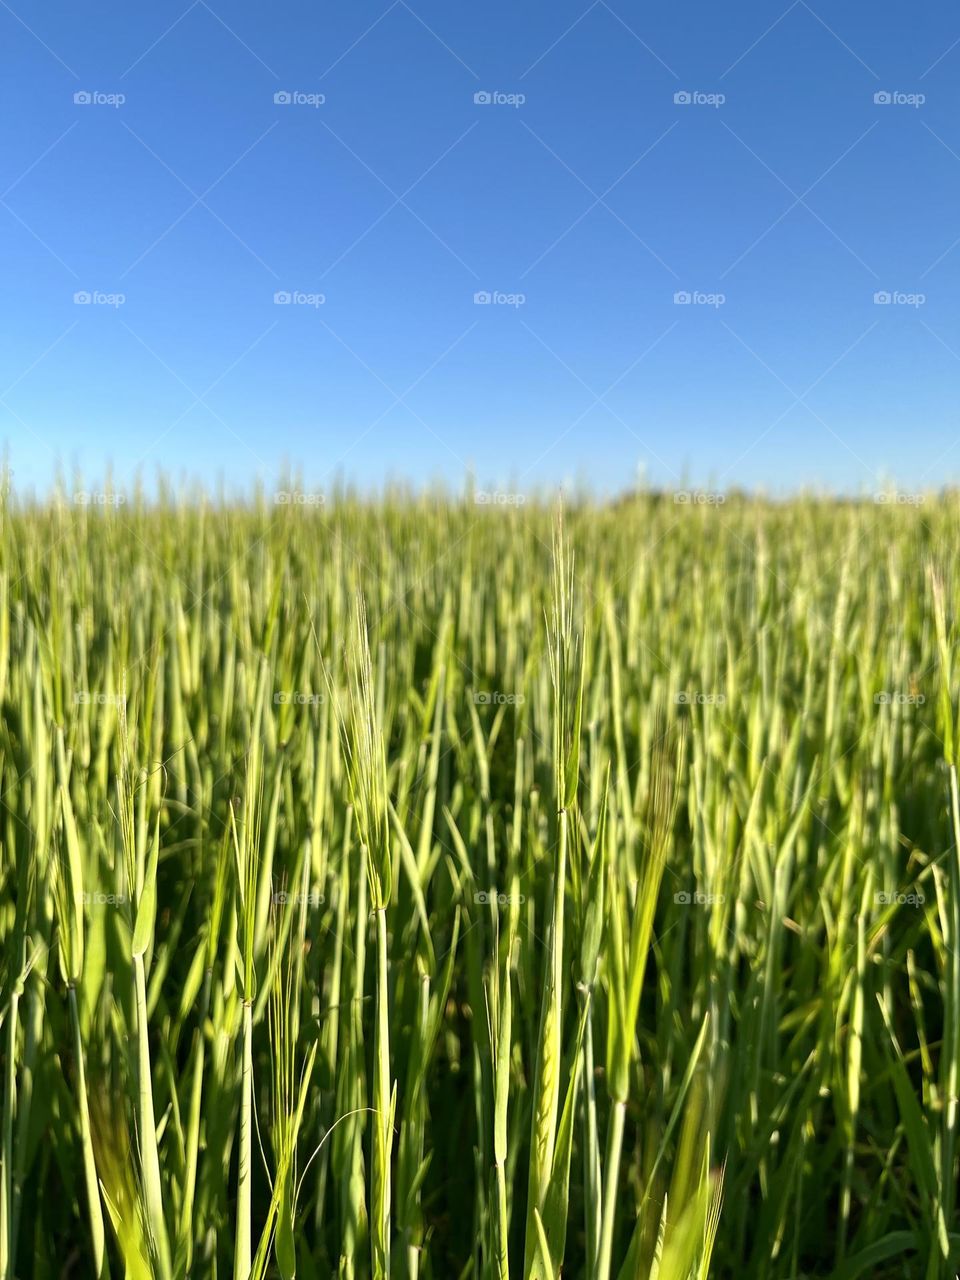 Wheat field in summer 